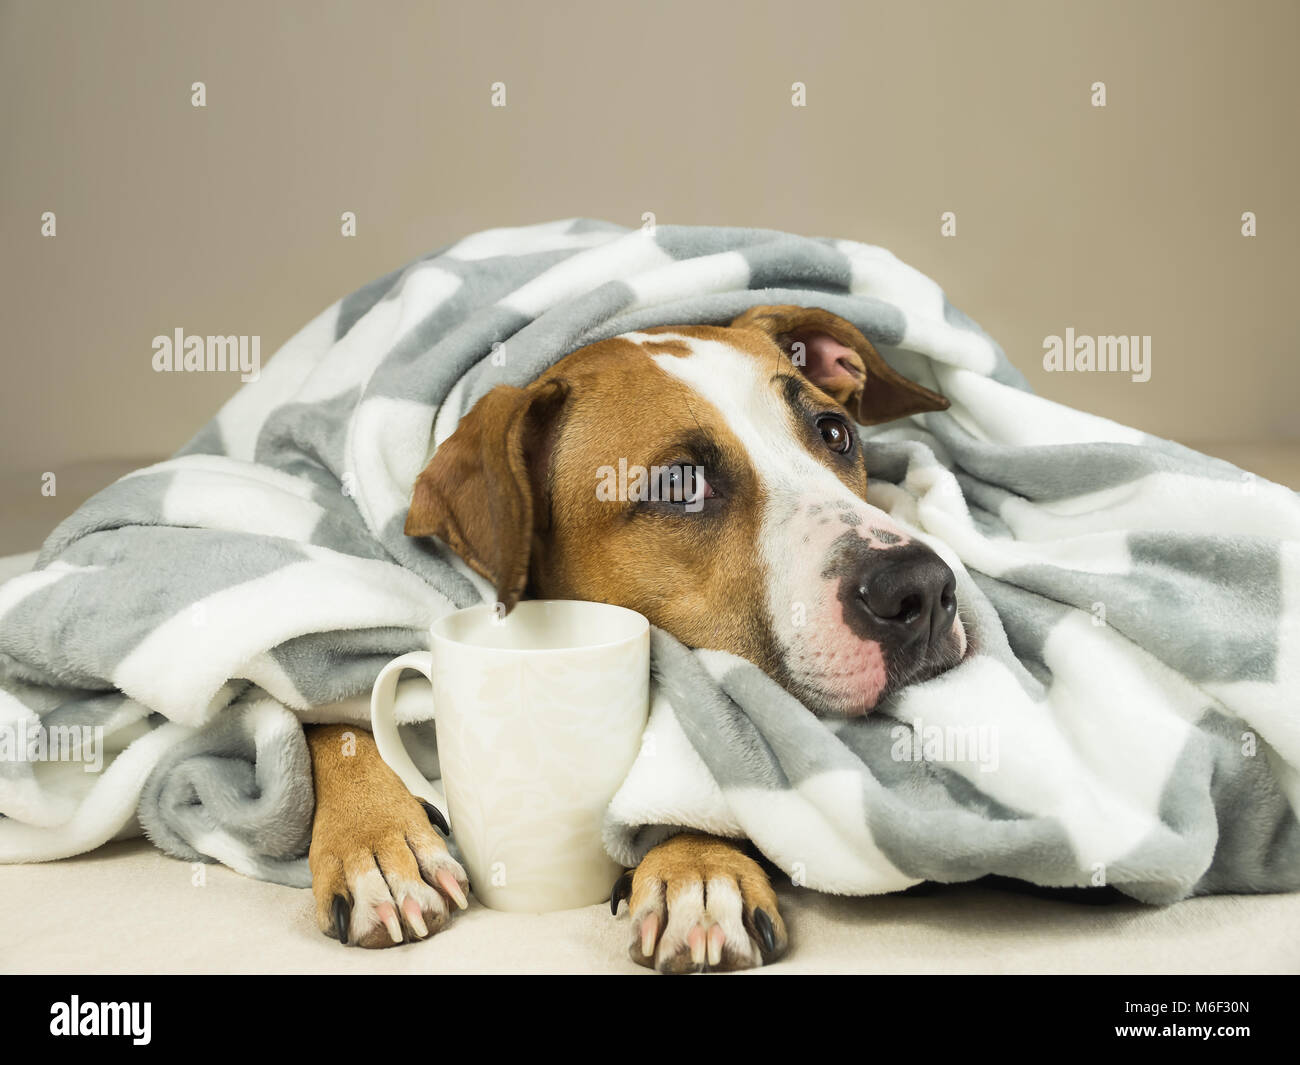 Cute Staffordshire Terrier Hund mit ausdrucksvollen Augen Knuddel in Throw Blanket und hält Tasse Tee oder Kaffee. Junge pitbull pet im Bett in Plaid gewickelt Stockfoto